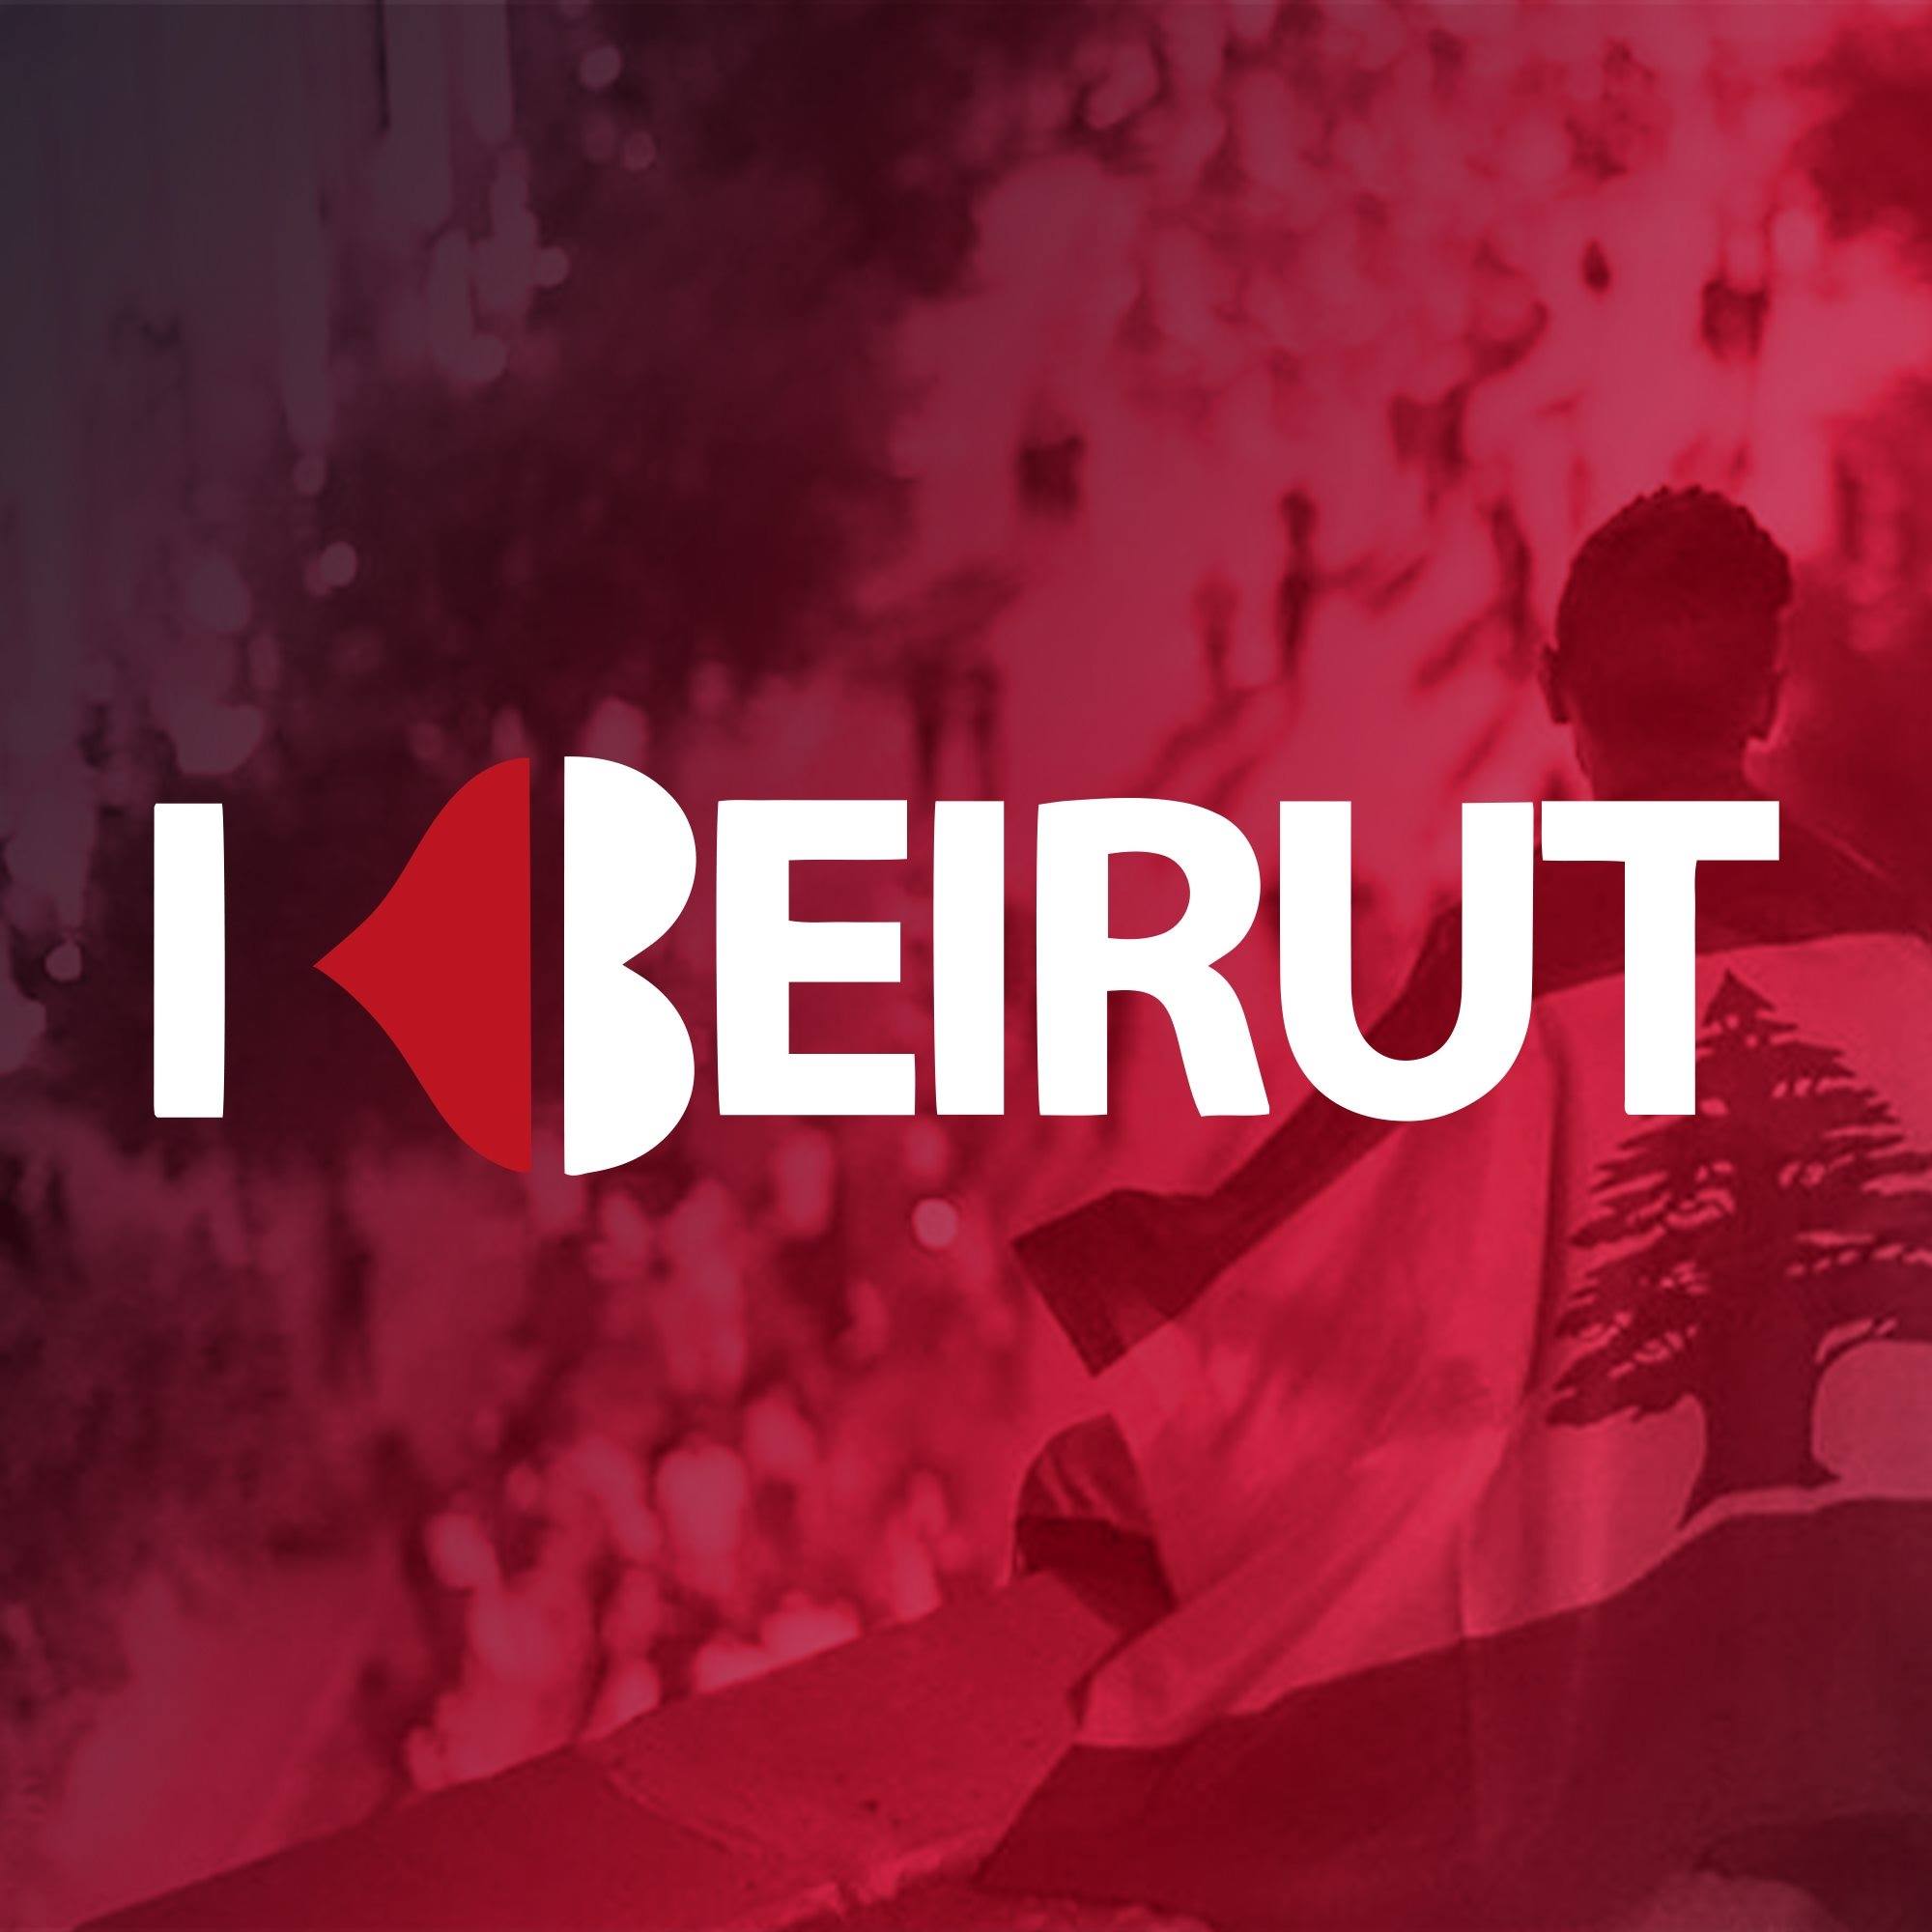 Beirut City: SBI